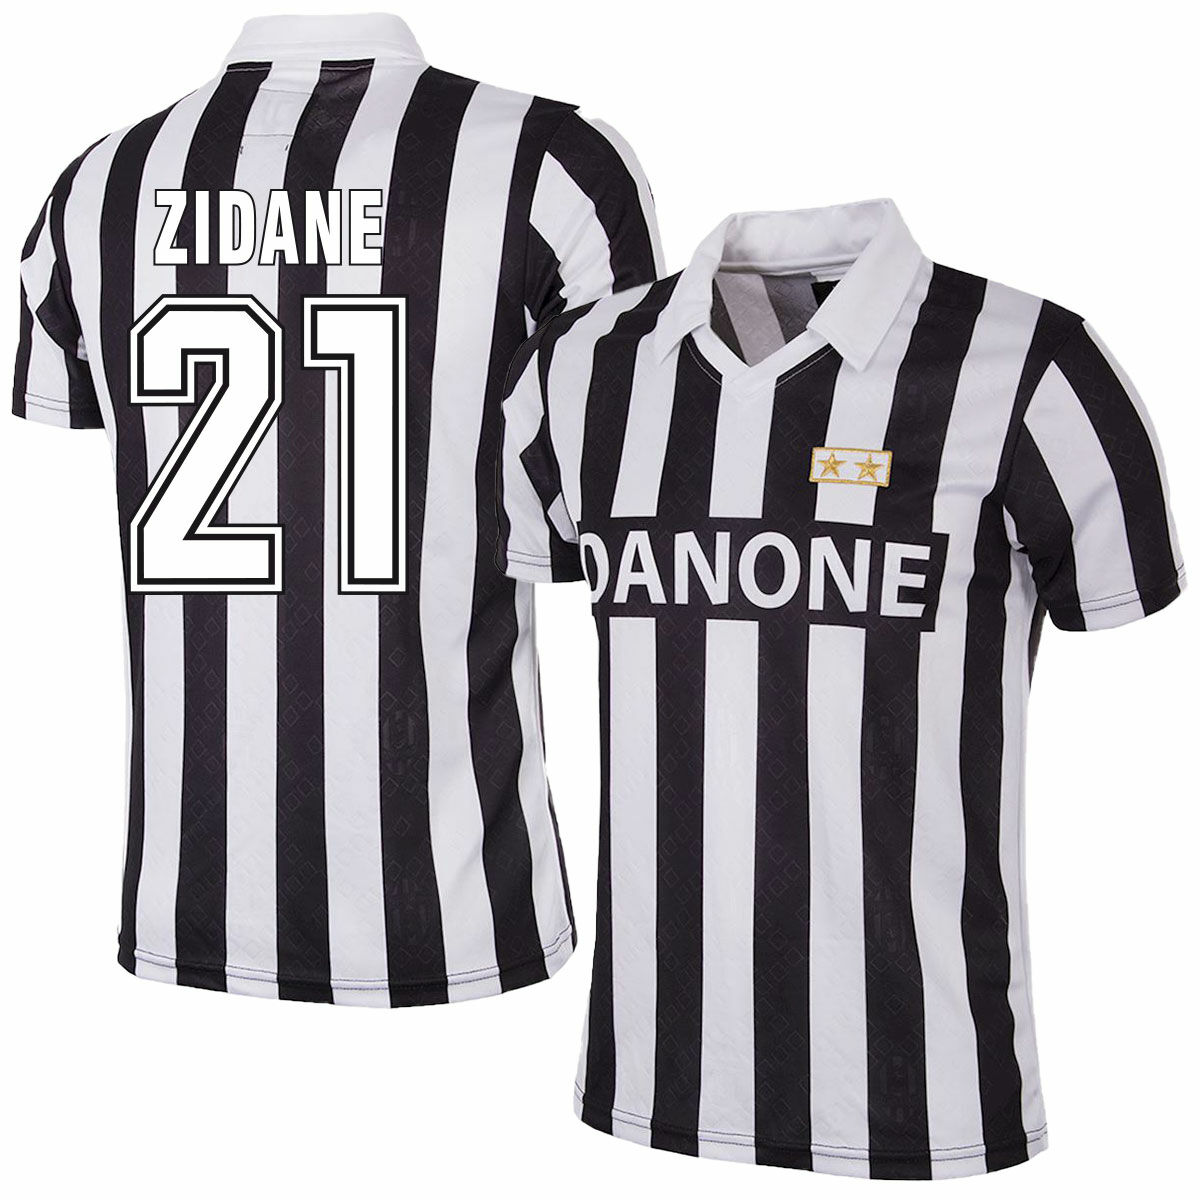 Juventus FC - Dres fotbalový - Zinédine Zidane, černobílý, číslo 21, domácí, sezóna 92/93, retrostyl